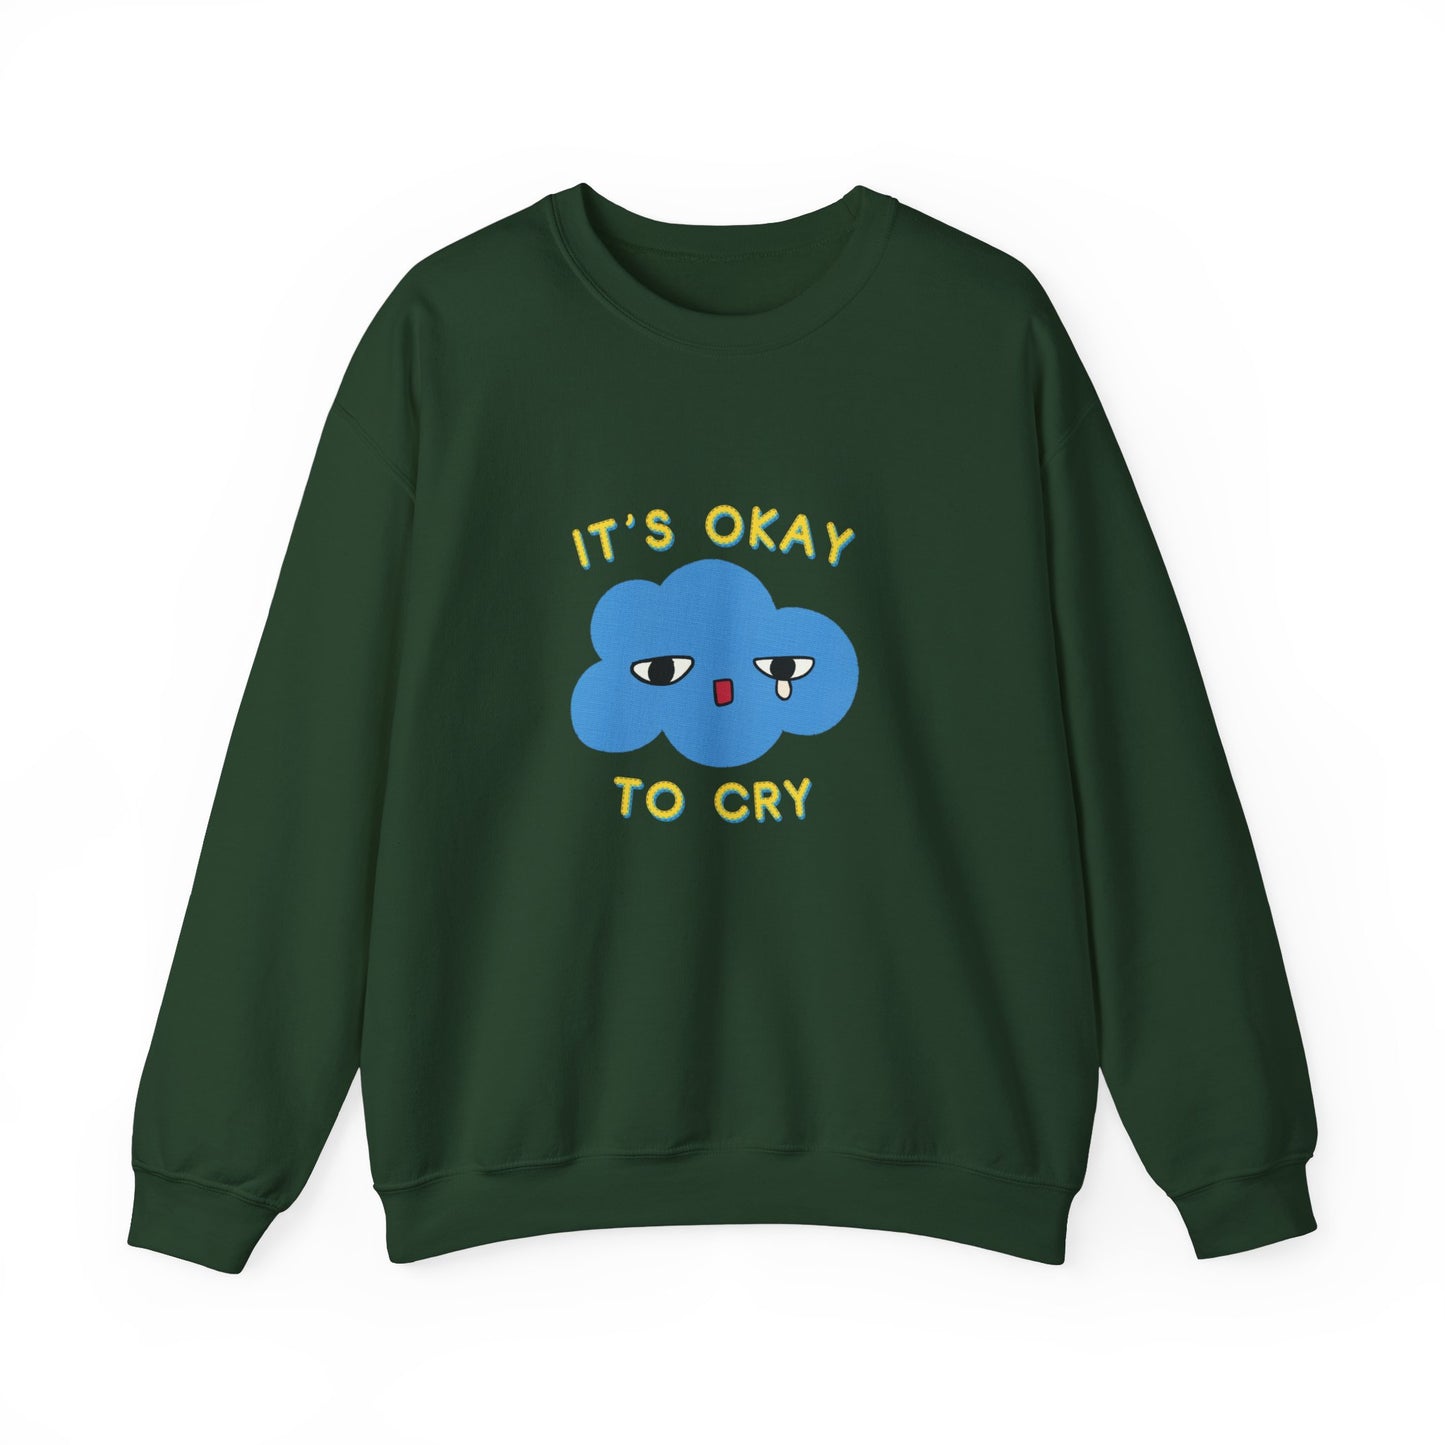 "It's Okay to Cry" Crewneck Sweatshirt